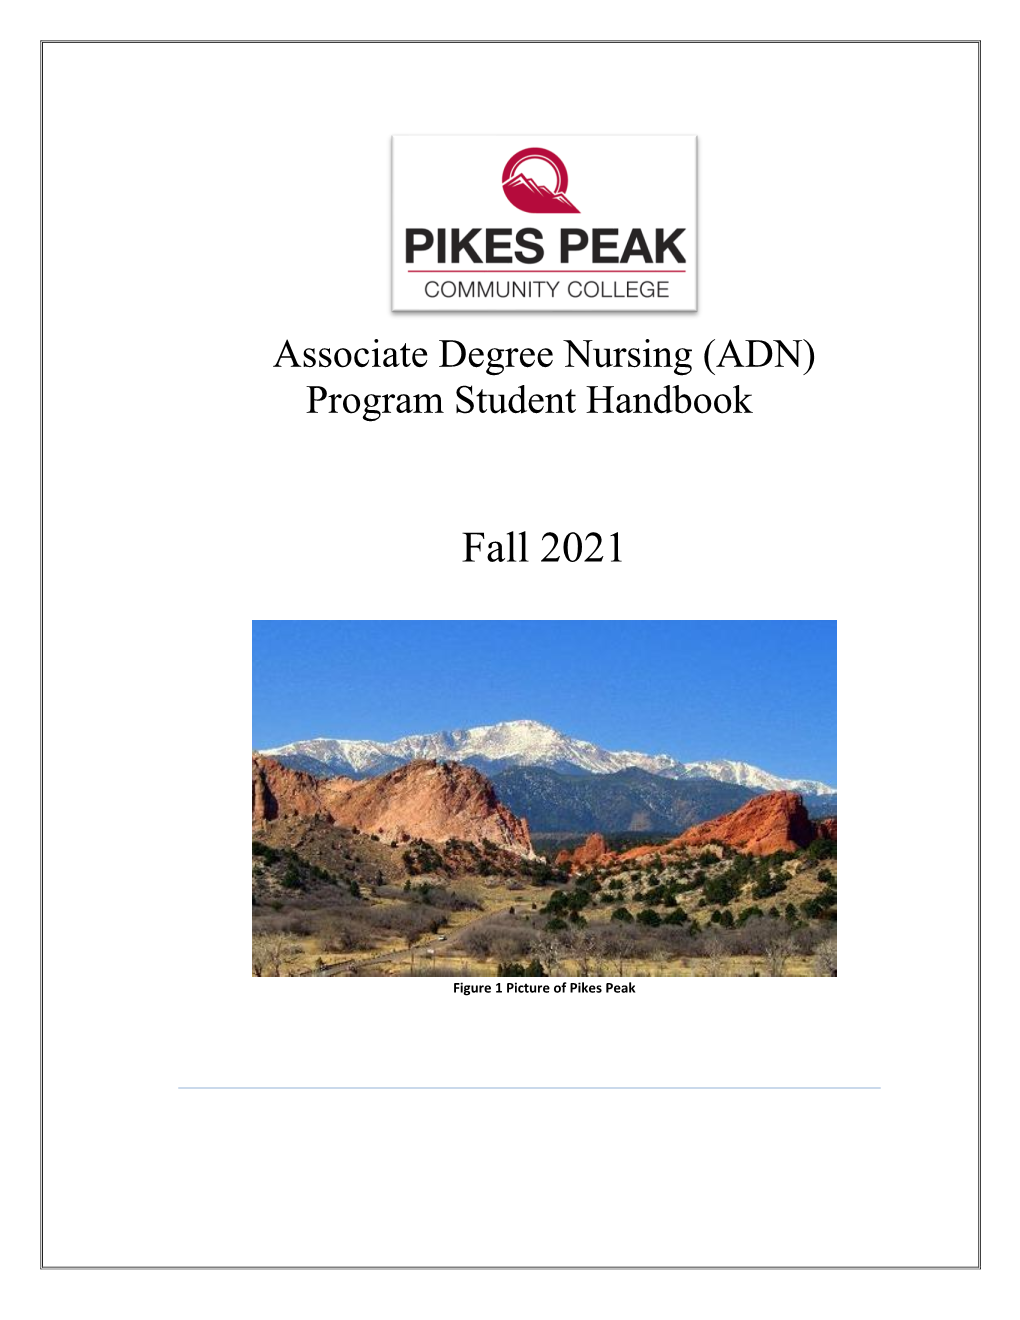 Fall 2021 Nursing Student Handbook